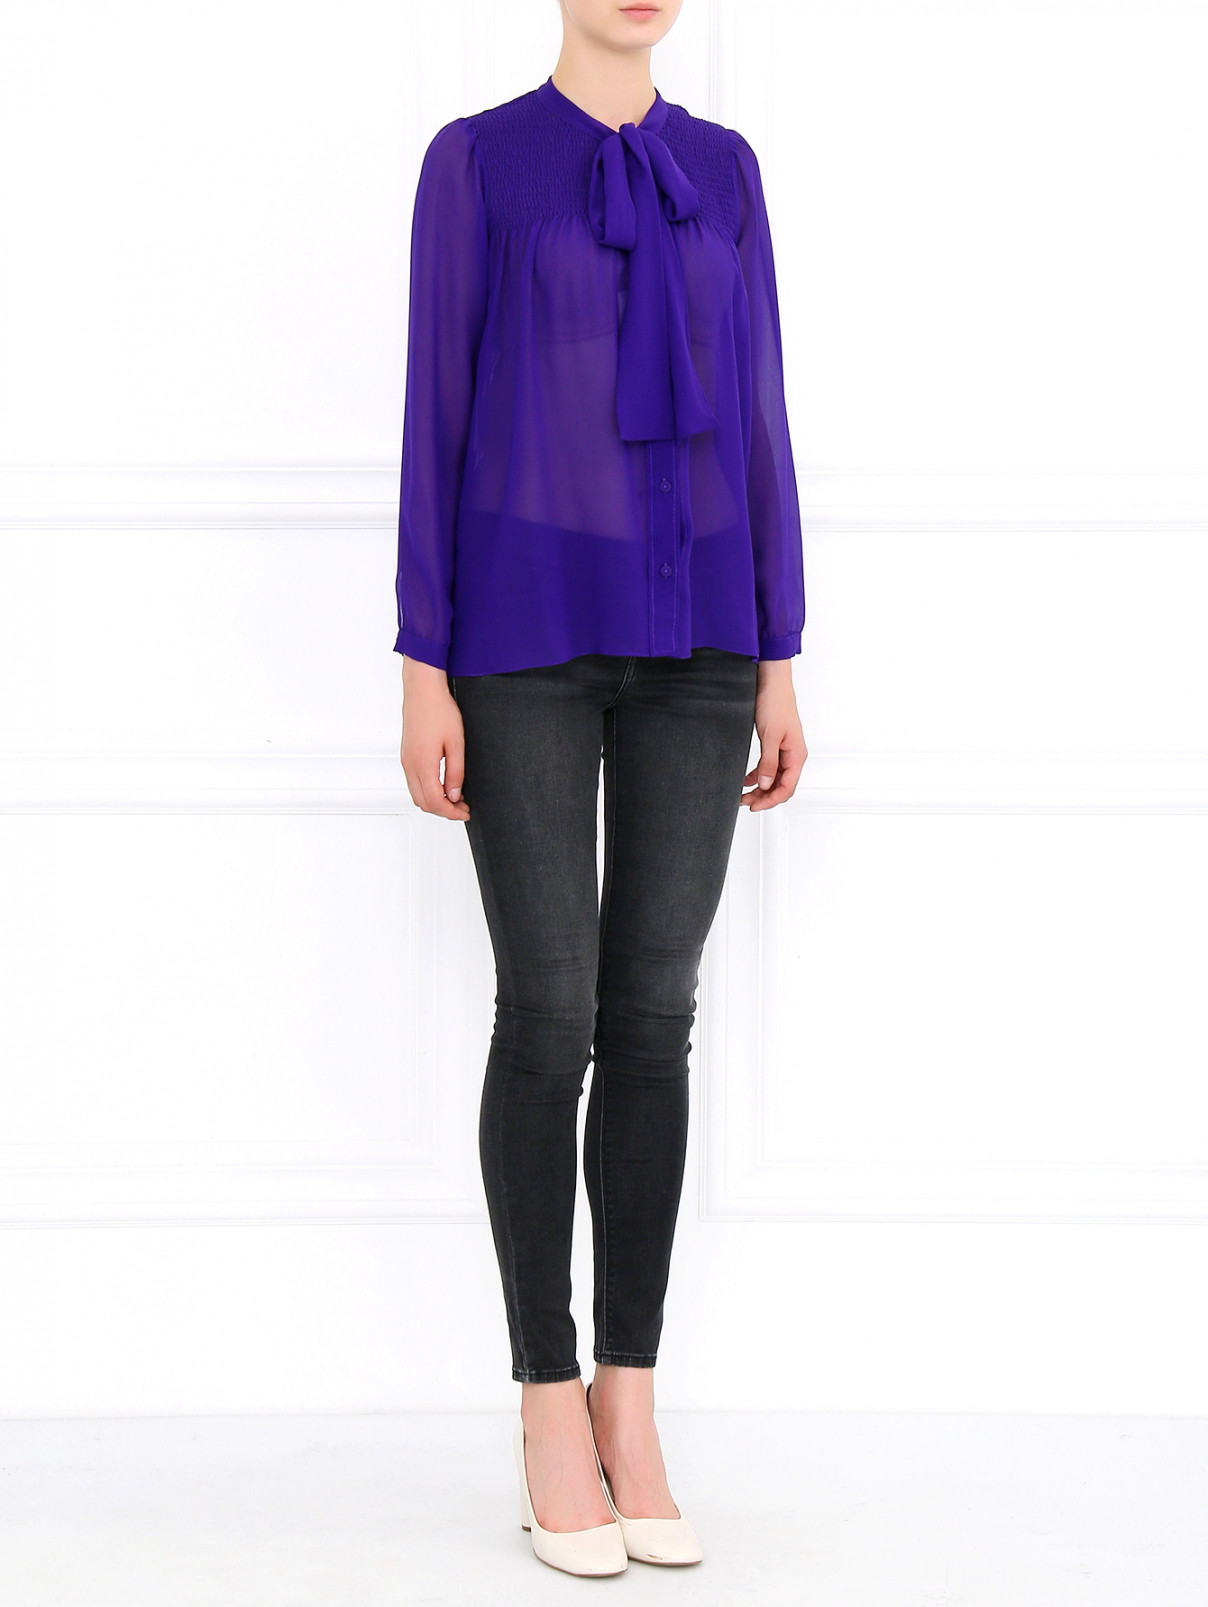 Блуза из шелка Moschino Cheap&Chic  –  Модель Общий вид  – Цвет:  Фиолетовый